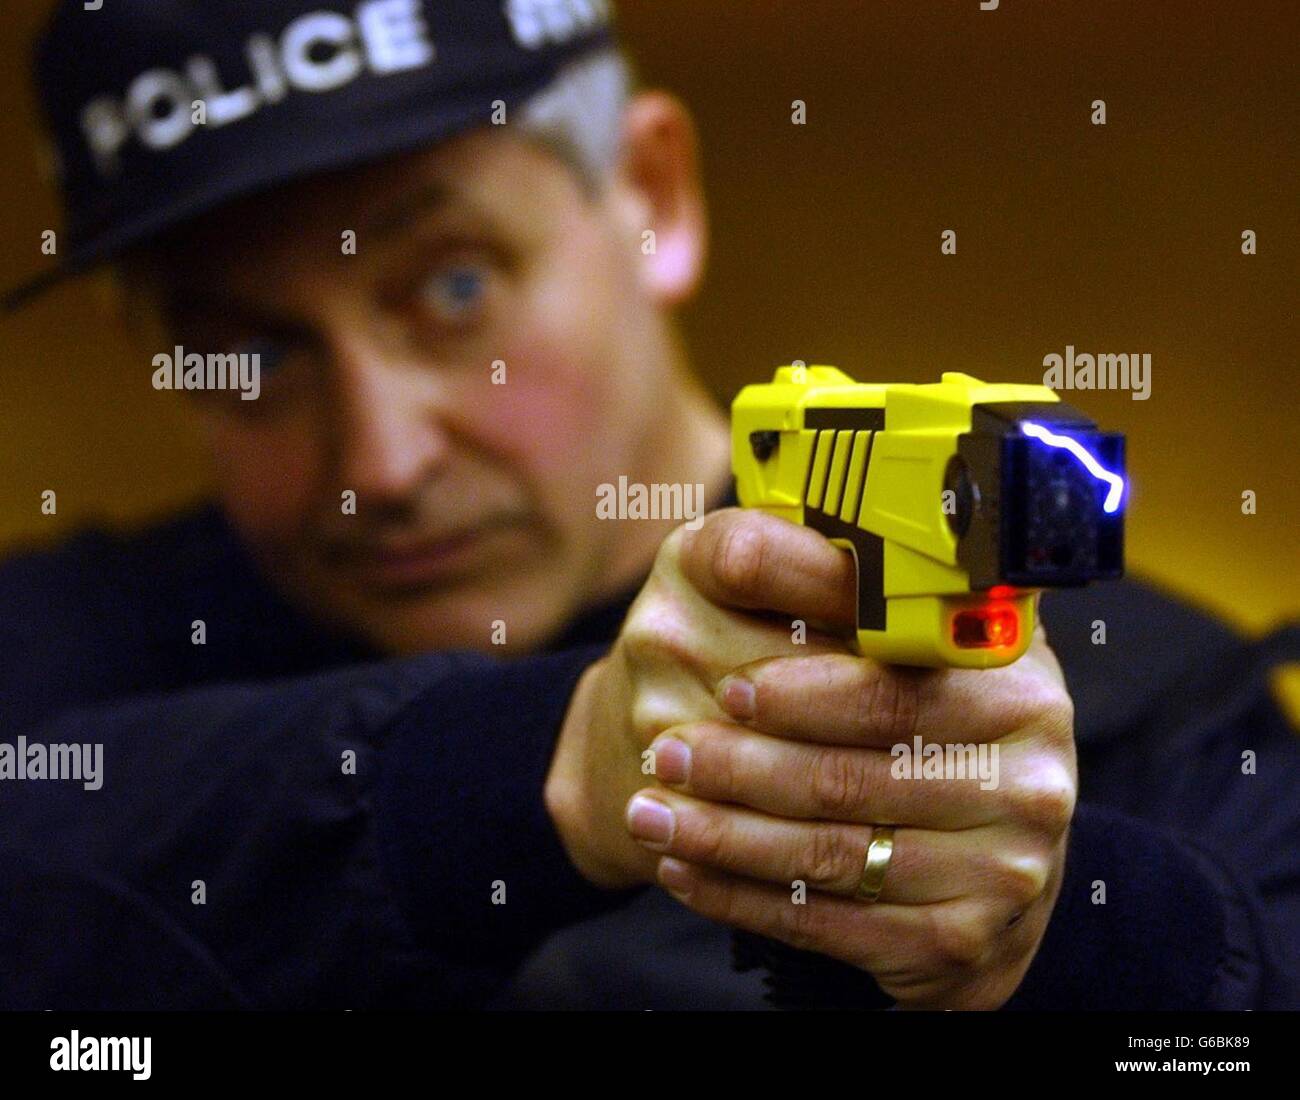 The Taser Stun Gun Demonstration Stock Photo